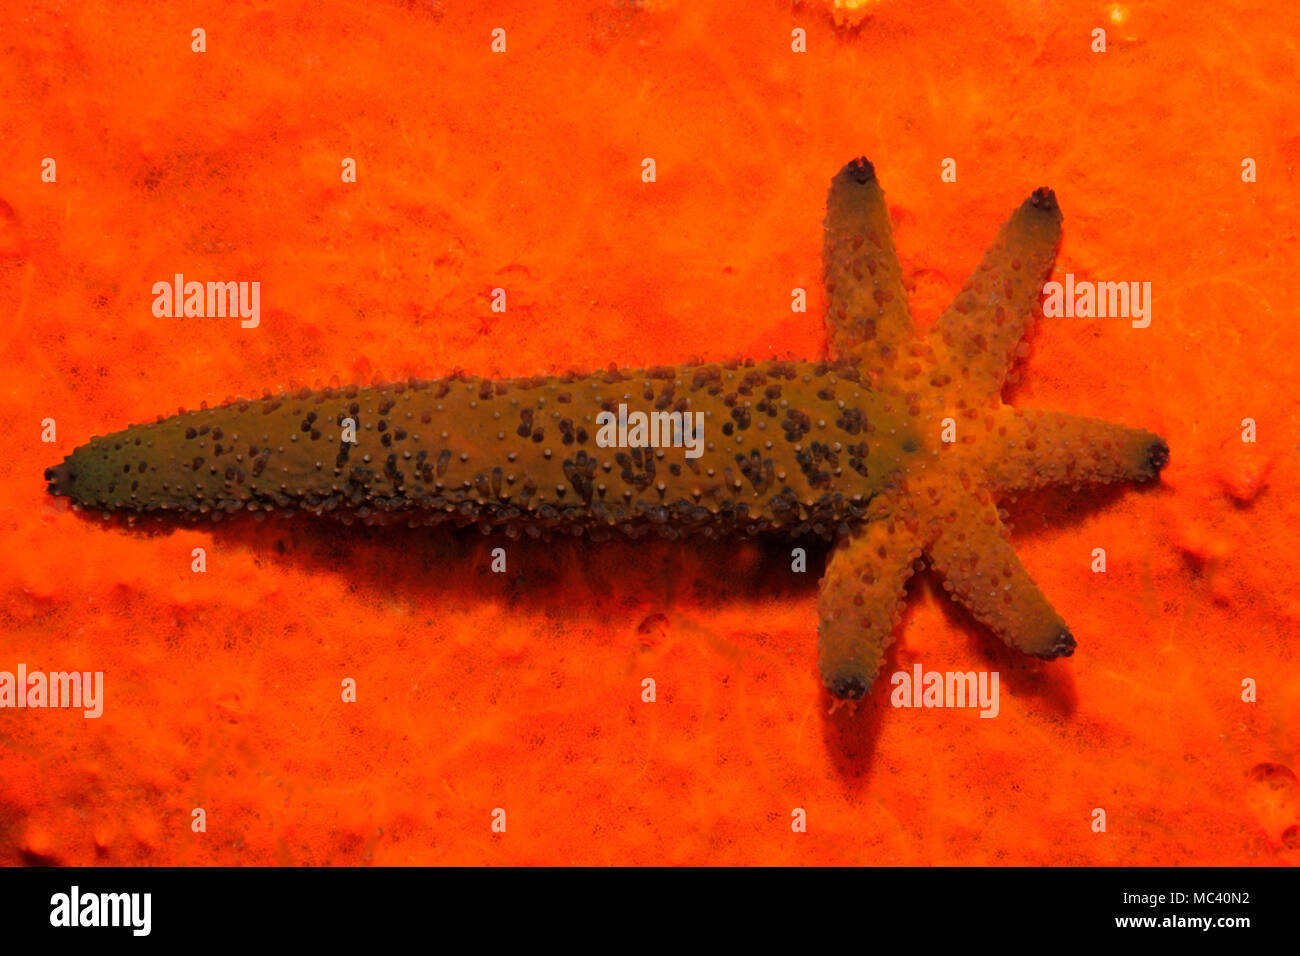 Luzon Sea Star, Echinaster luzonicus, zeigen eine fünf arm Regeneration wächst aus dem Stumpf eines 'übergeordneten' Arm. Siehe unten für mehr Informationen. Stockfoto